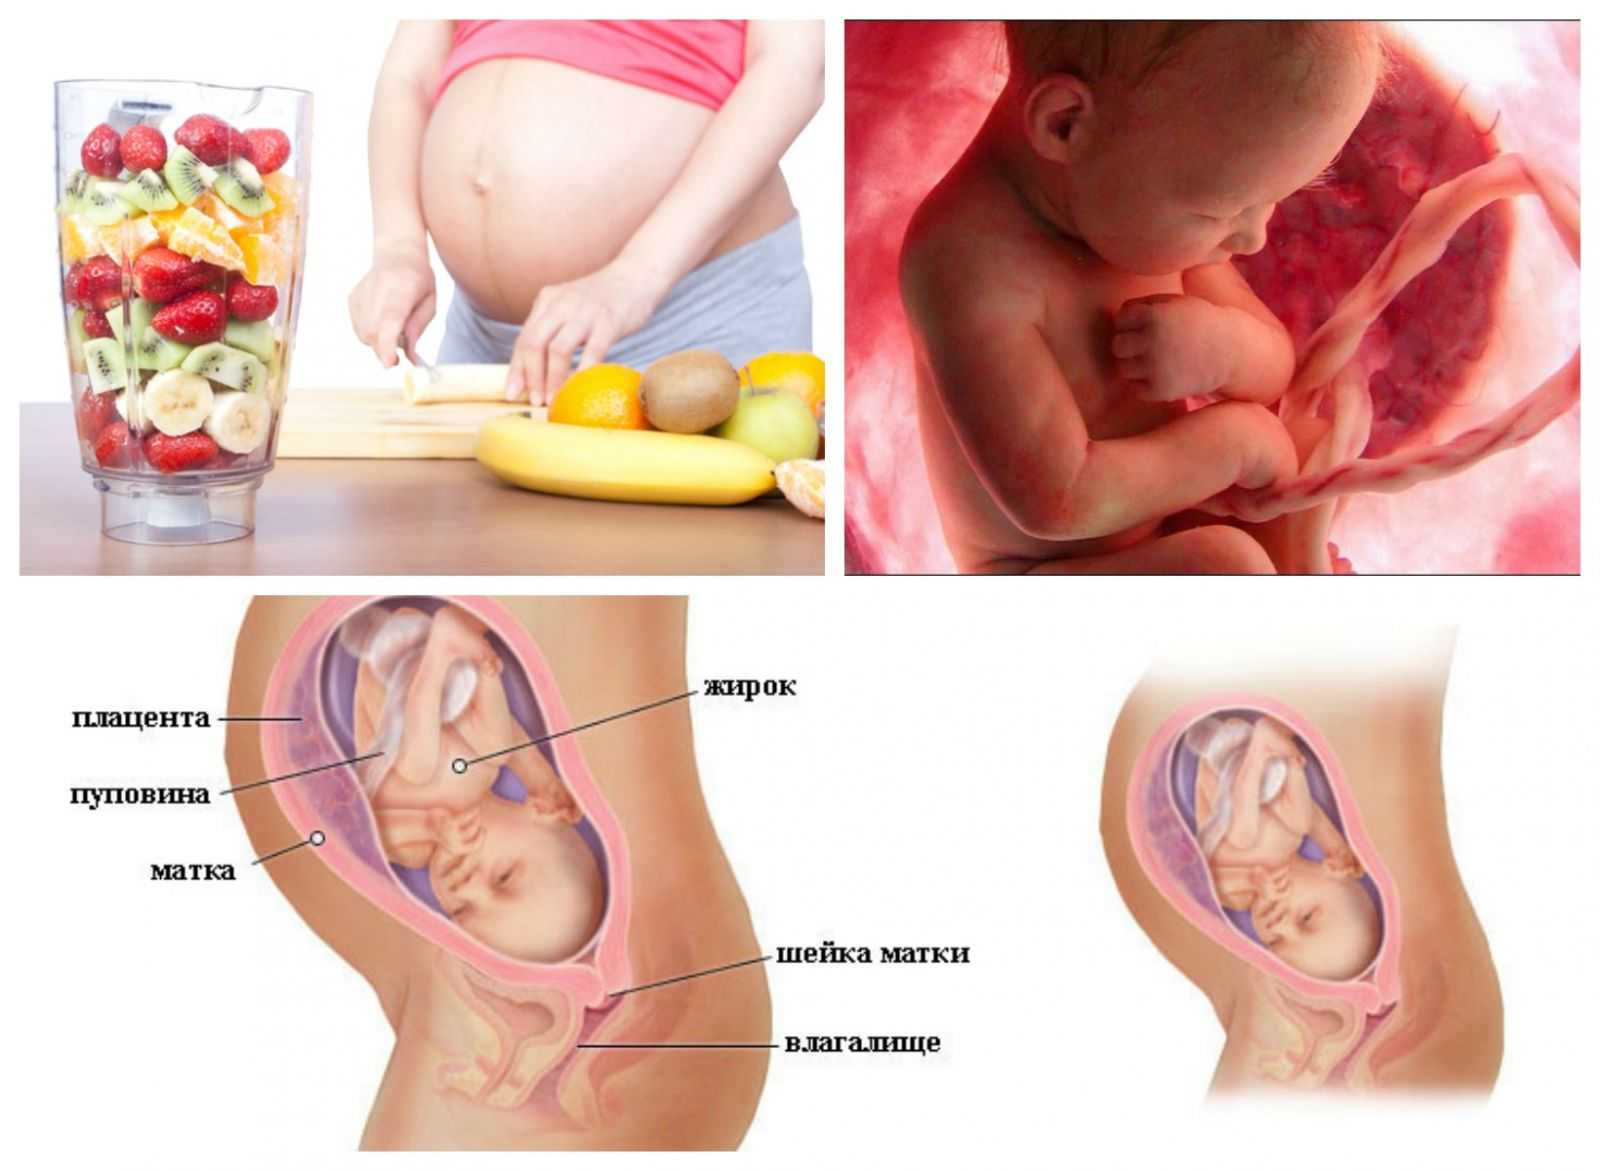 31 неделя беременности: ощущения, развитие плода, фото узи, рекомендации